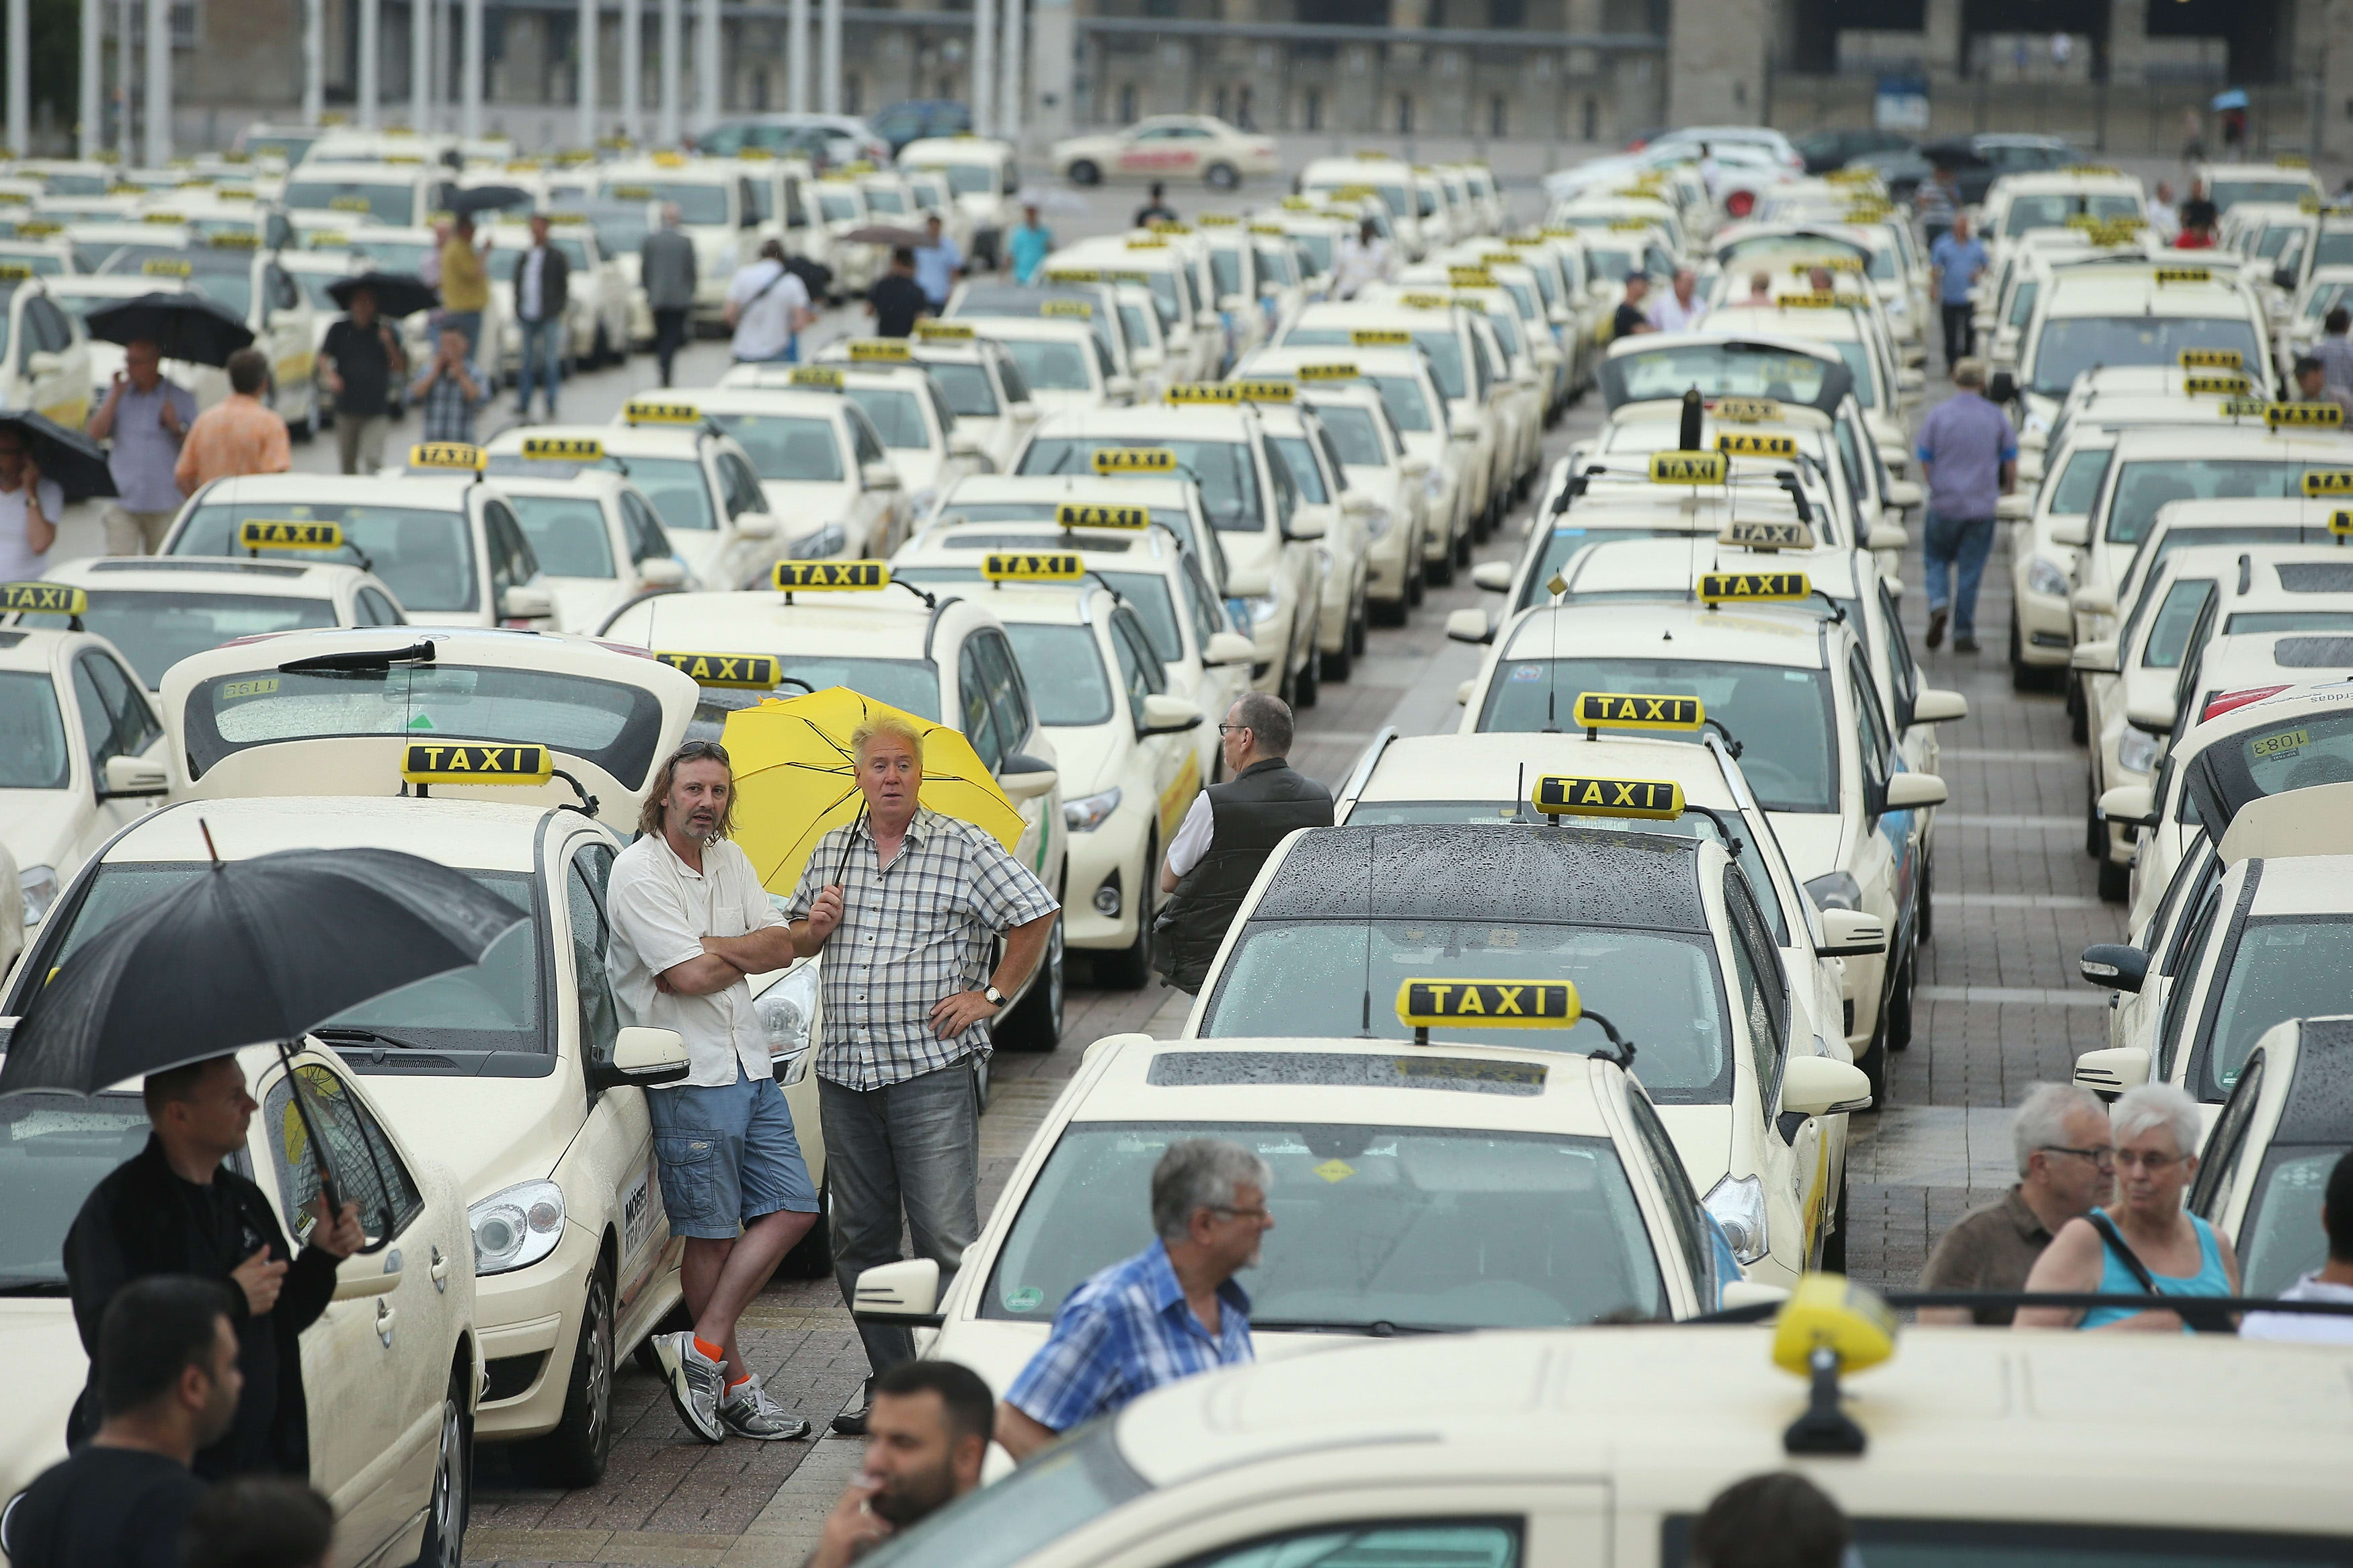 Российские таксисты начали бунтовать против агрегаторов